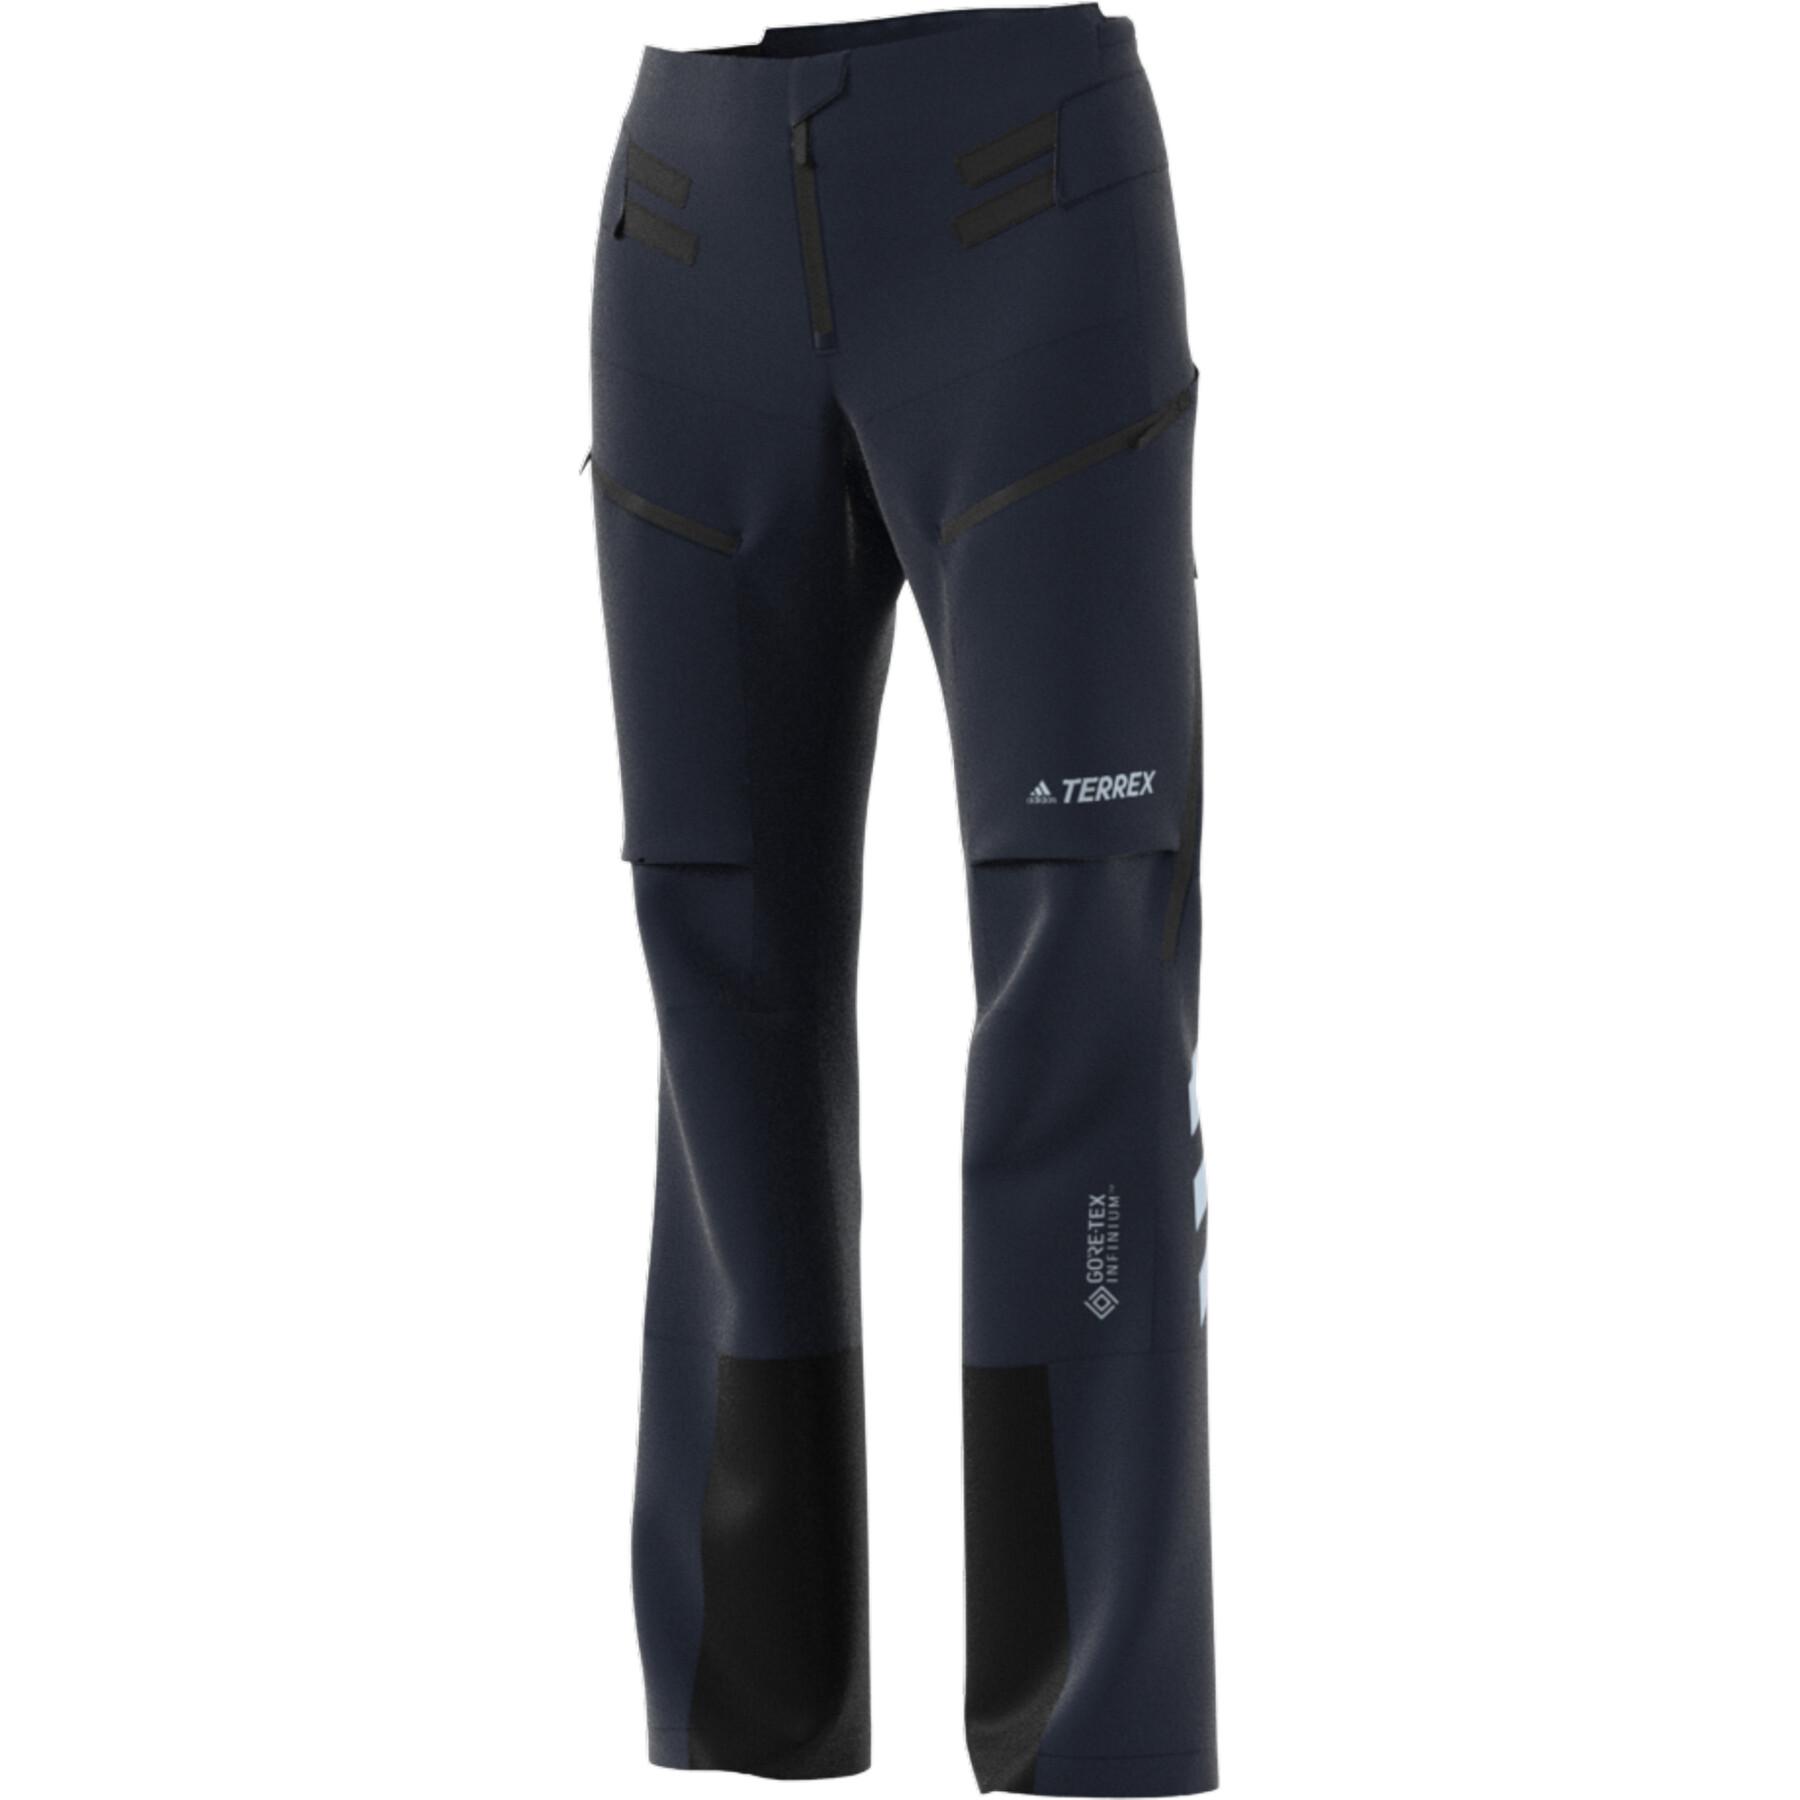 Women's trousers adidas Terrex Skyclimb Tour Gore Ski Touring Soft Shell